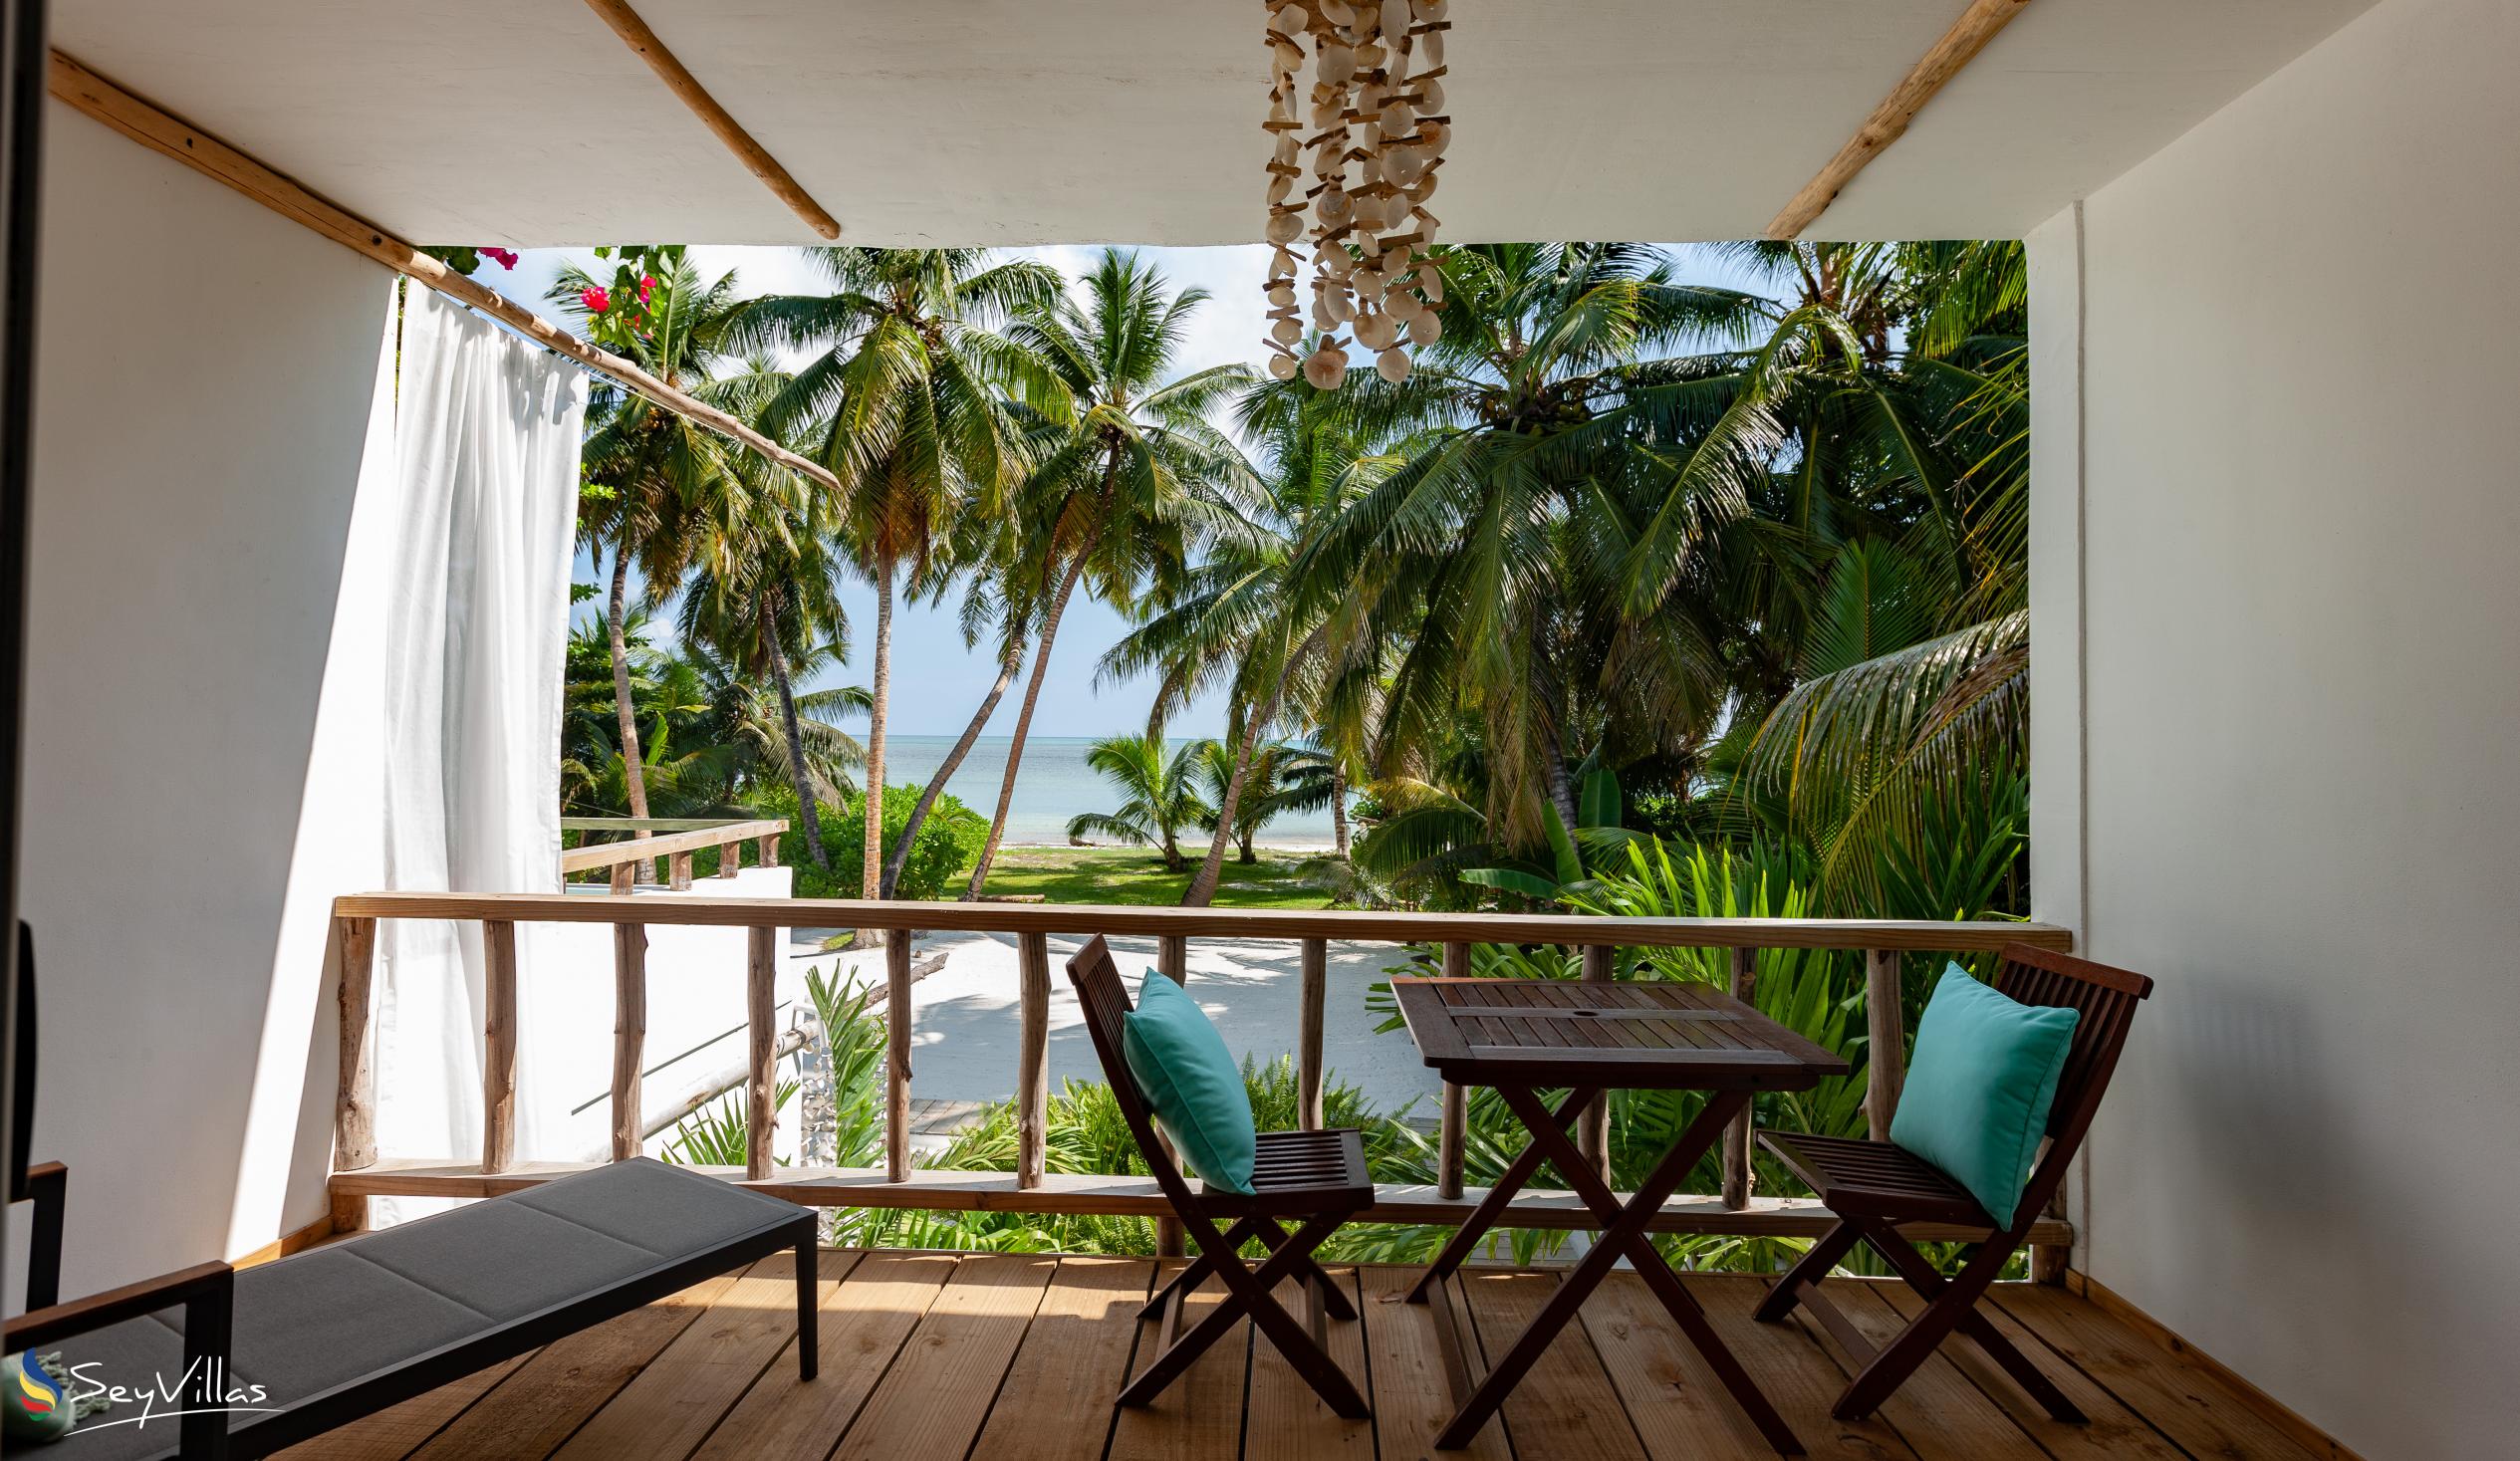 Foto 133: Bliss Hotel Praslin - Beach House - Chambre Beach Supérieure - Praslin (Seychelles)